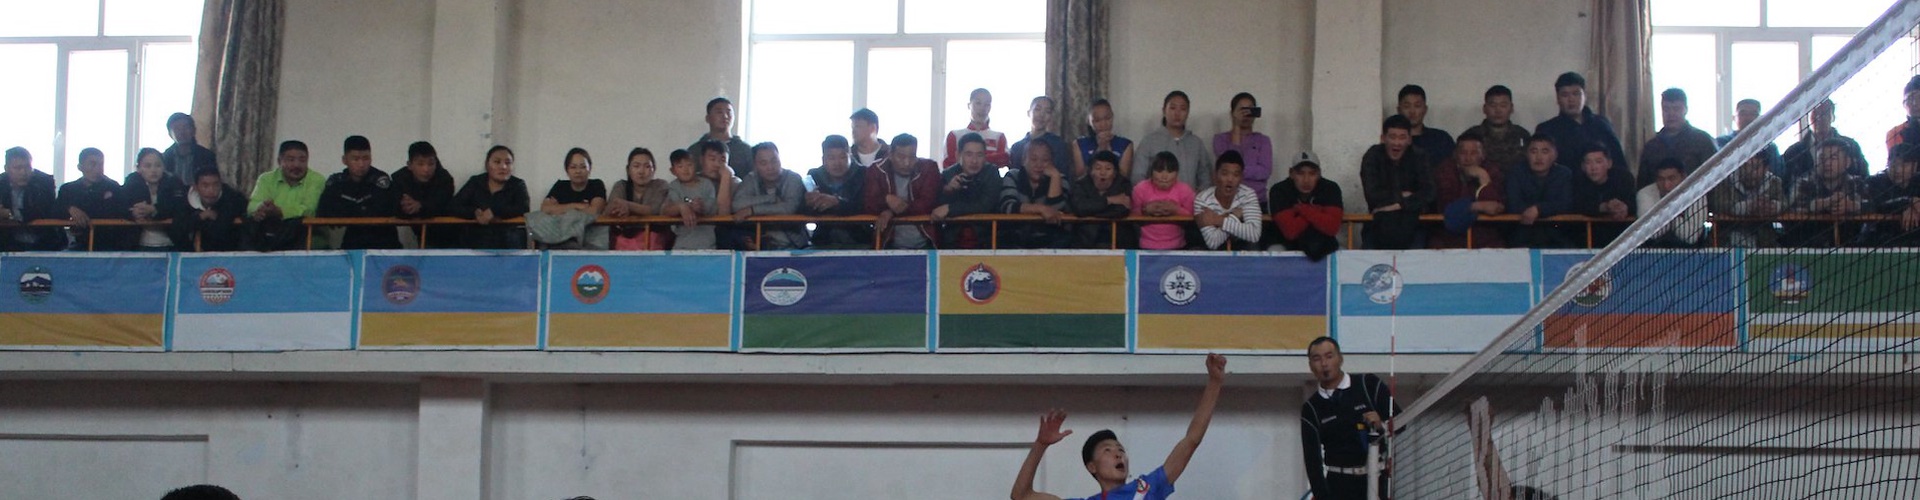 МУГД А.Доржсүрэнгийн нэрэмжит Улсын аварга шалгаруулах өсвөрийн волейбол